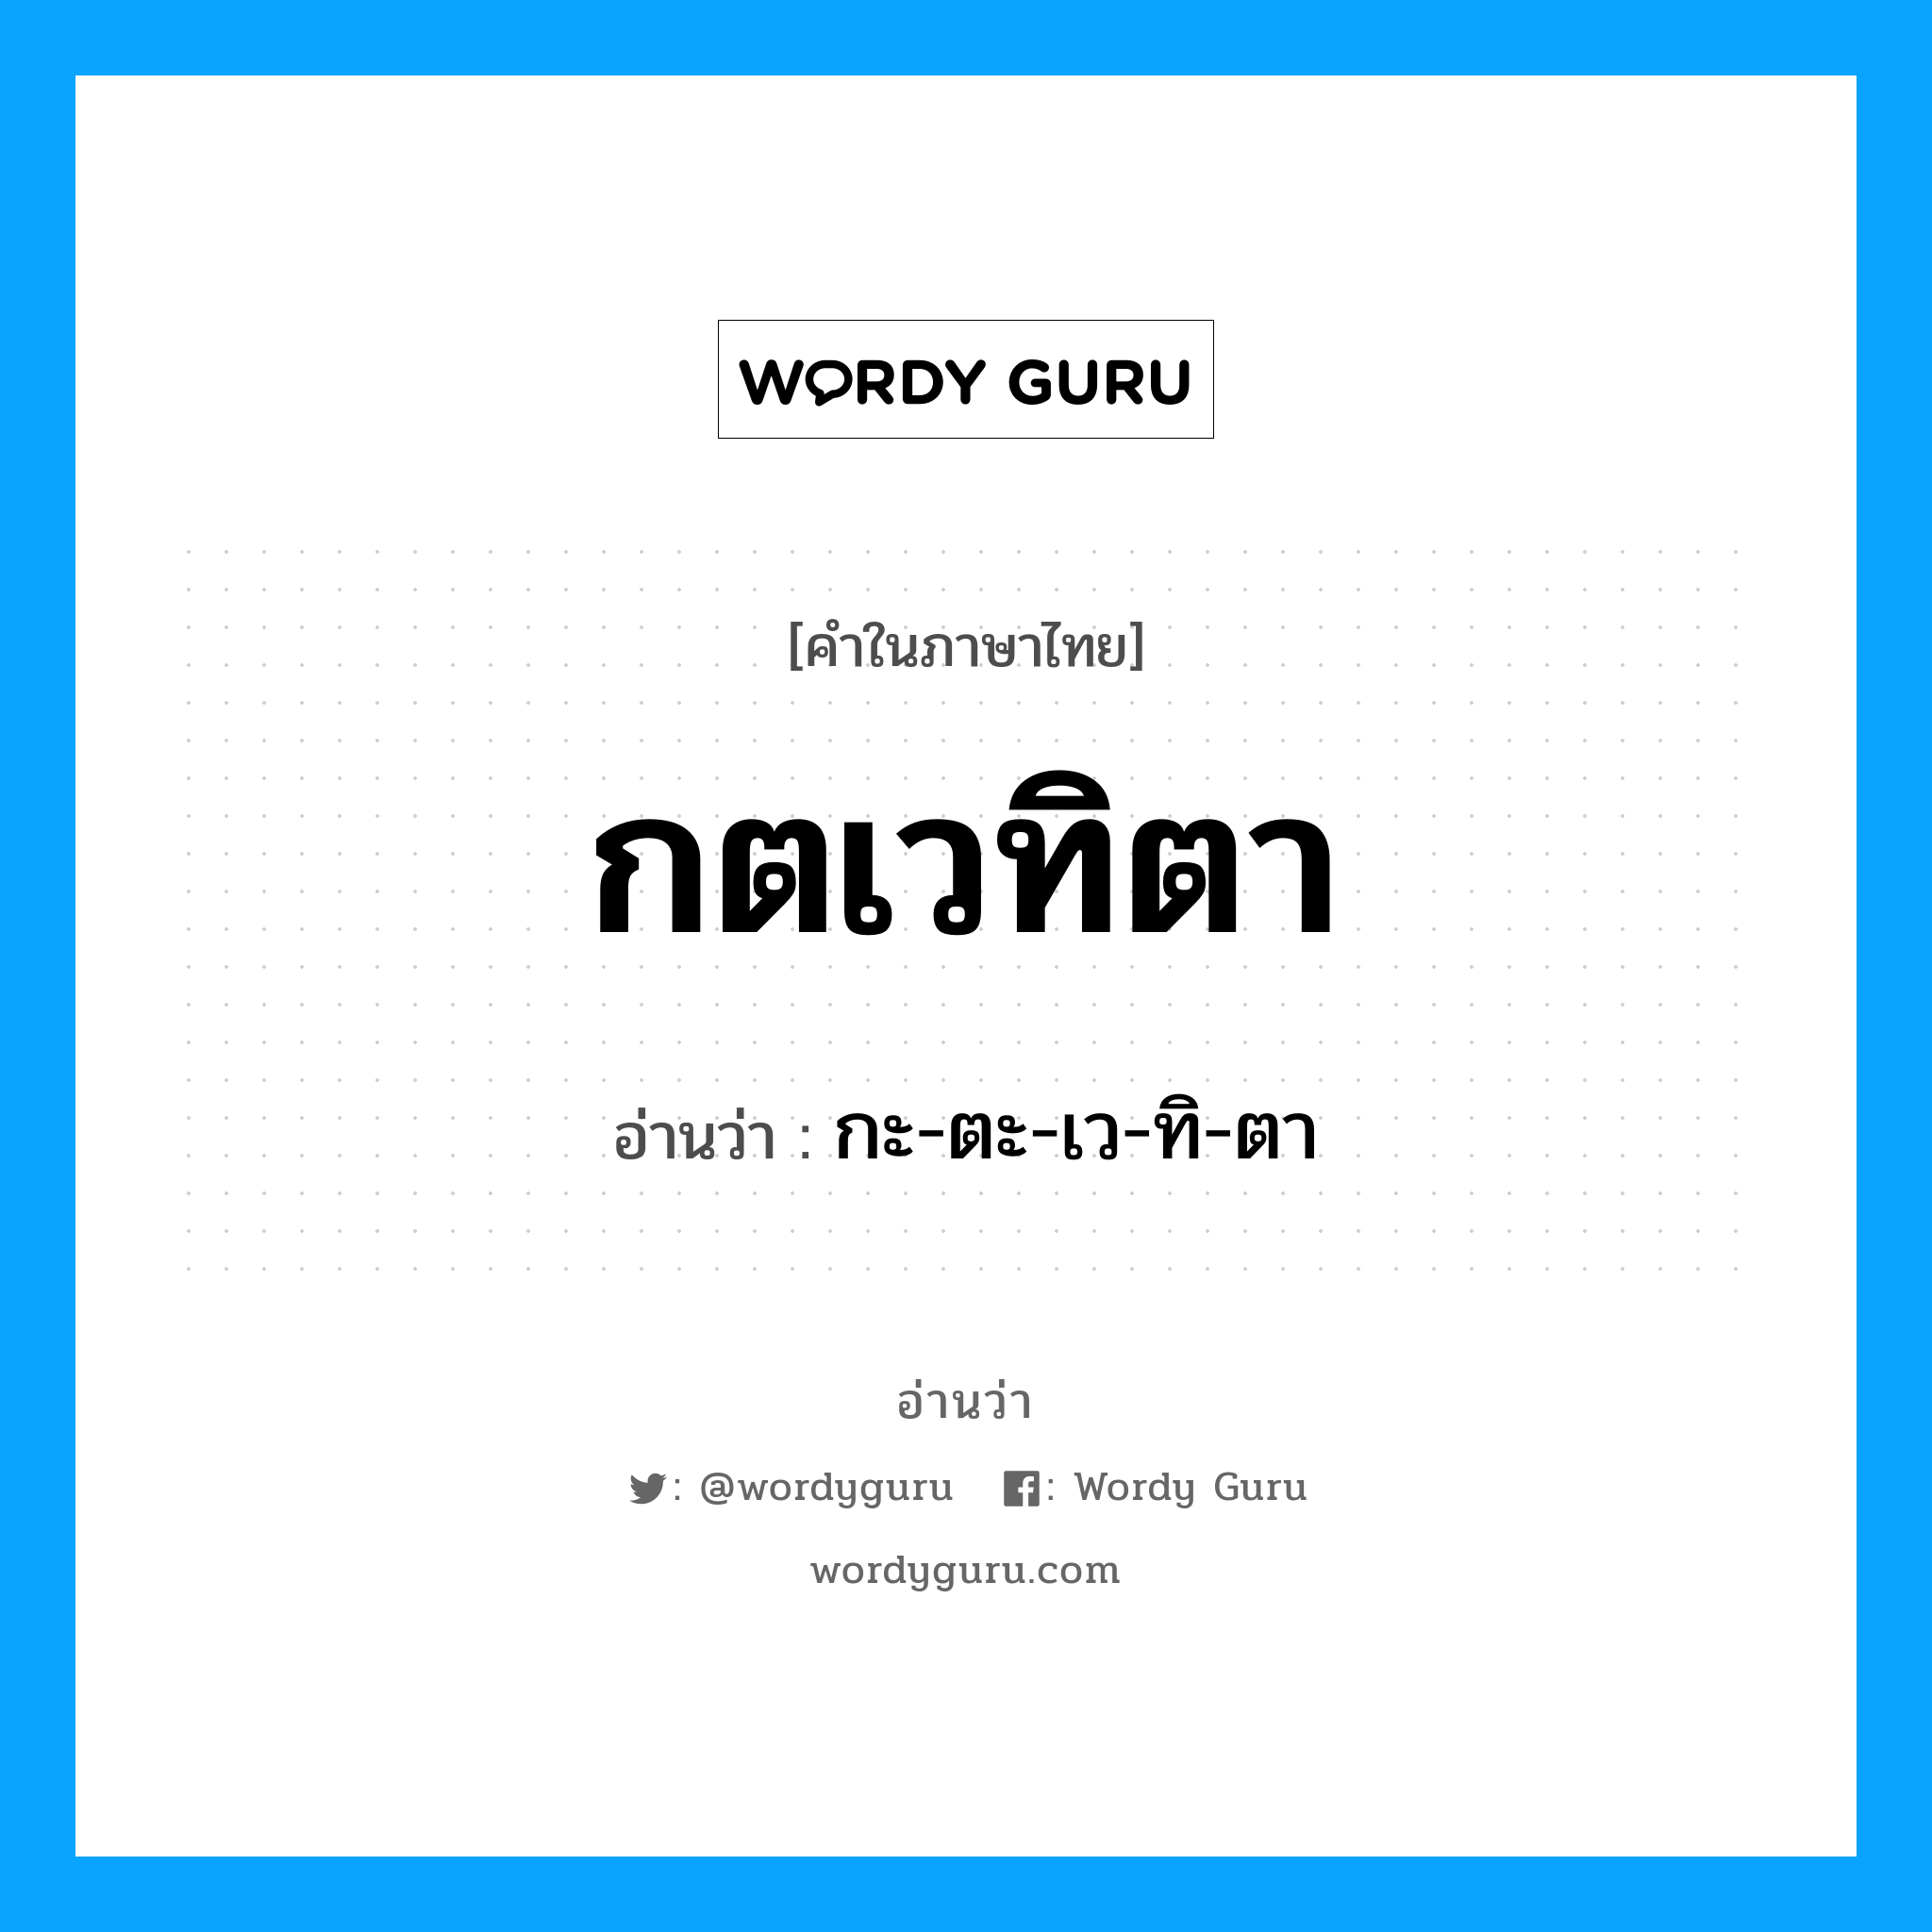 กะ-ตะ-เว-ทิ-ตา เป็นคำอ่านของคำไหน?, คำในภาษาไทย กะ-ตะ-เว-ทิ-ตา อ่านว่า กตเวทิตา